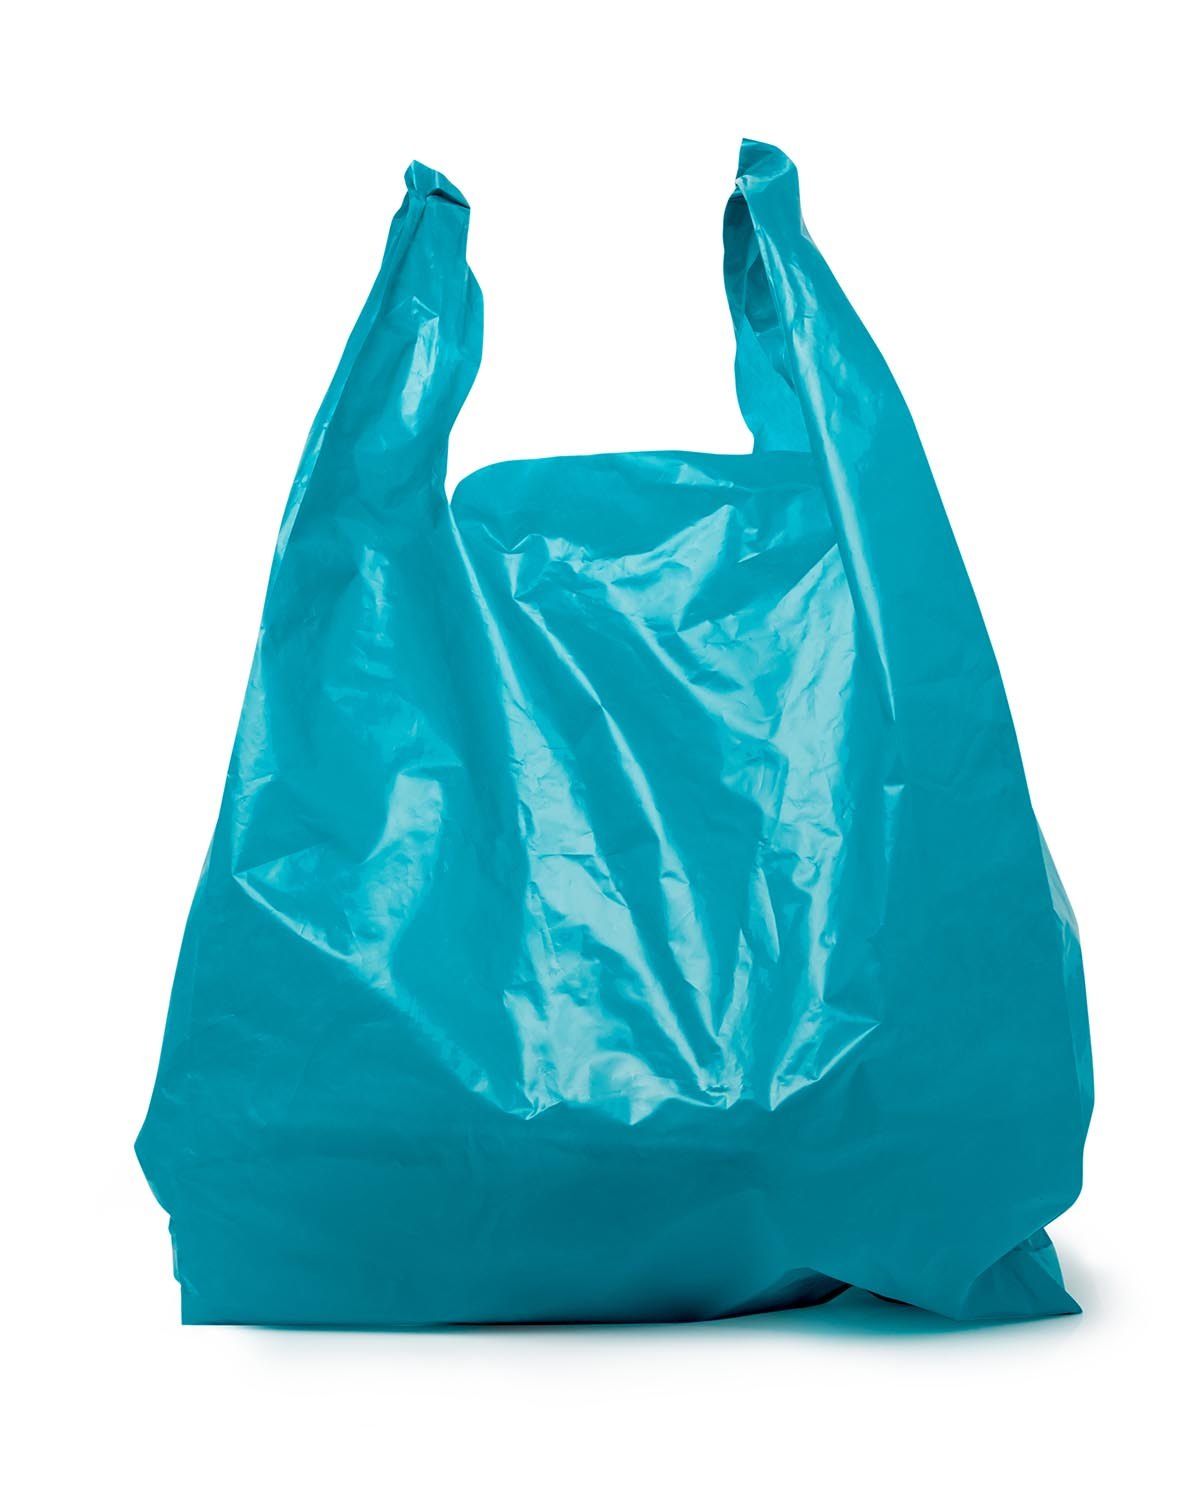 Jamaica raft plastic bag video